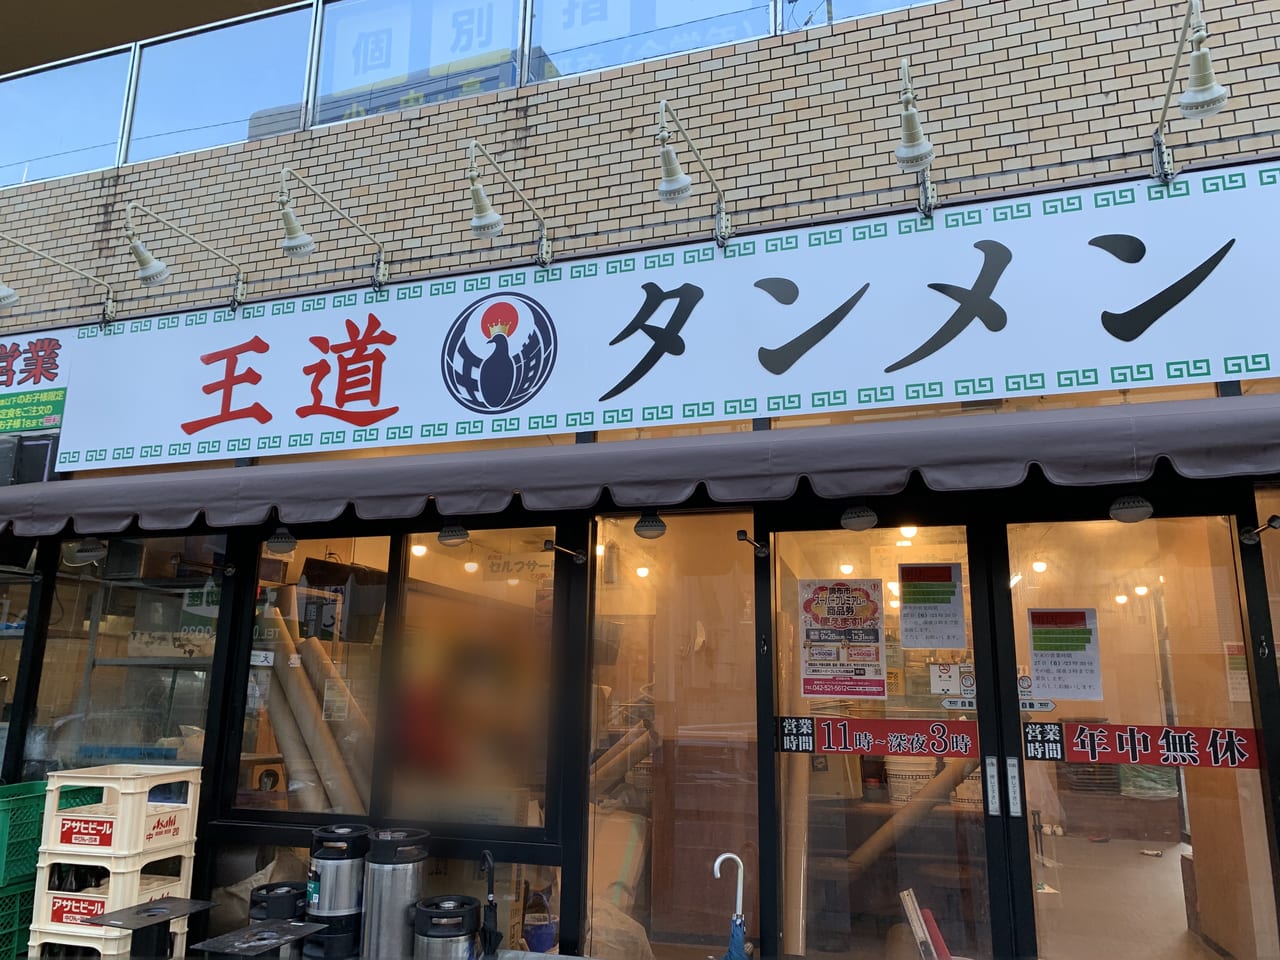 調布駅前に、「王道タンメンというお店がオープンするようです。